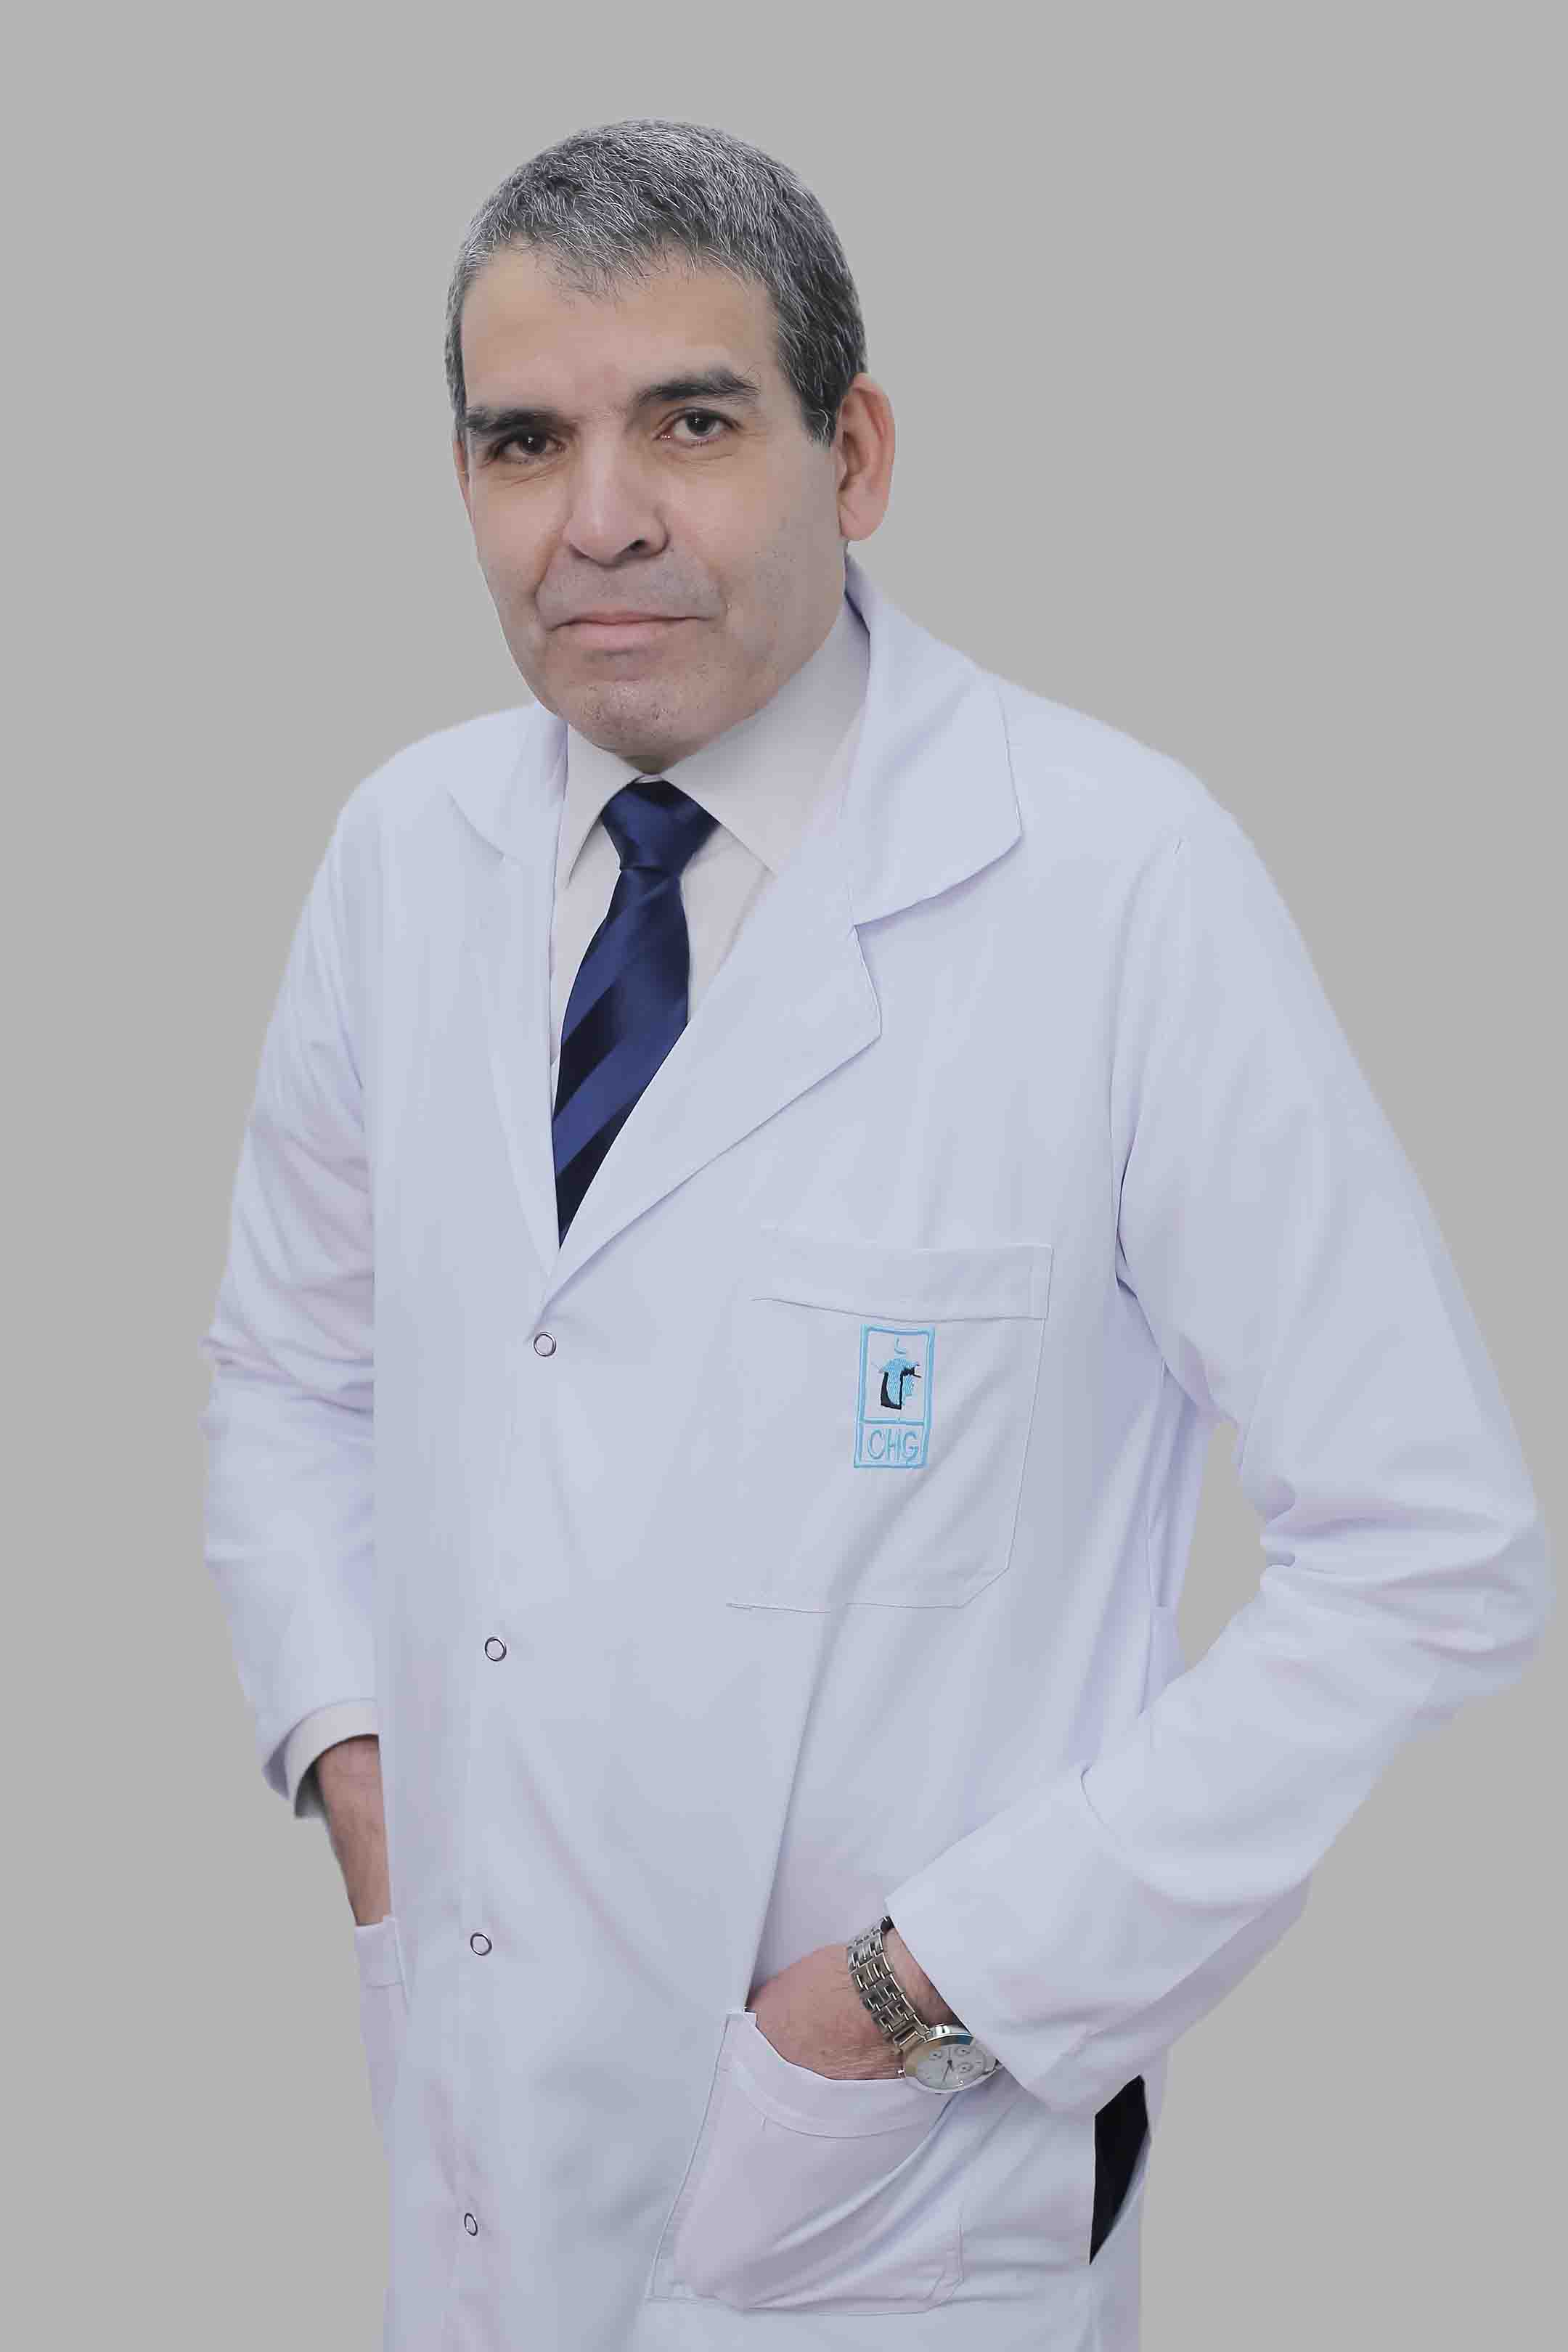 Dr. Nabil Ahmed Lotfy Mubarak